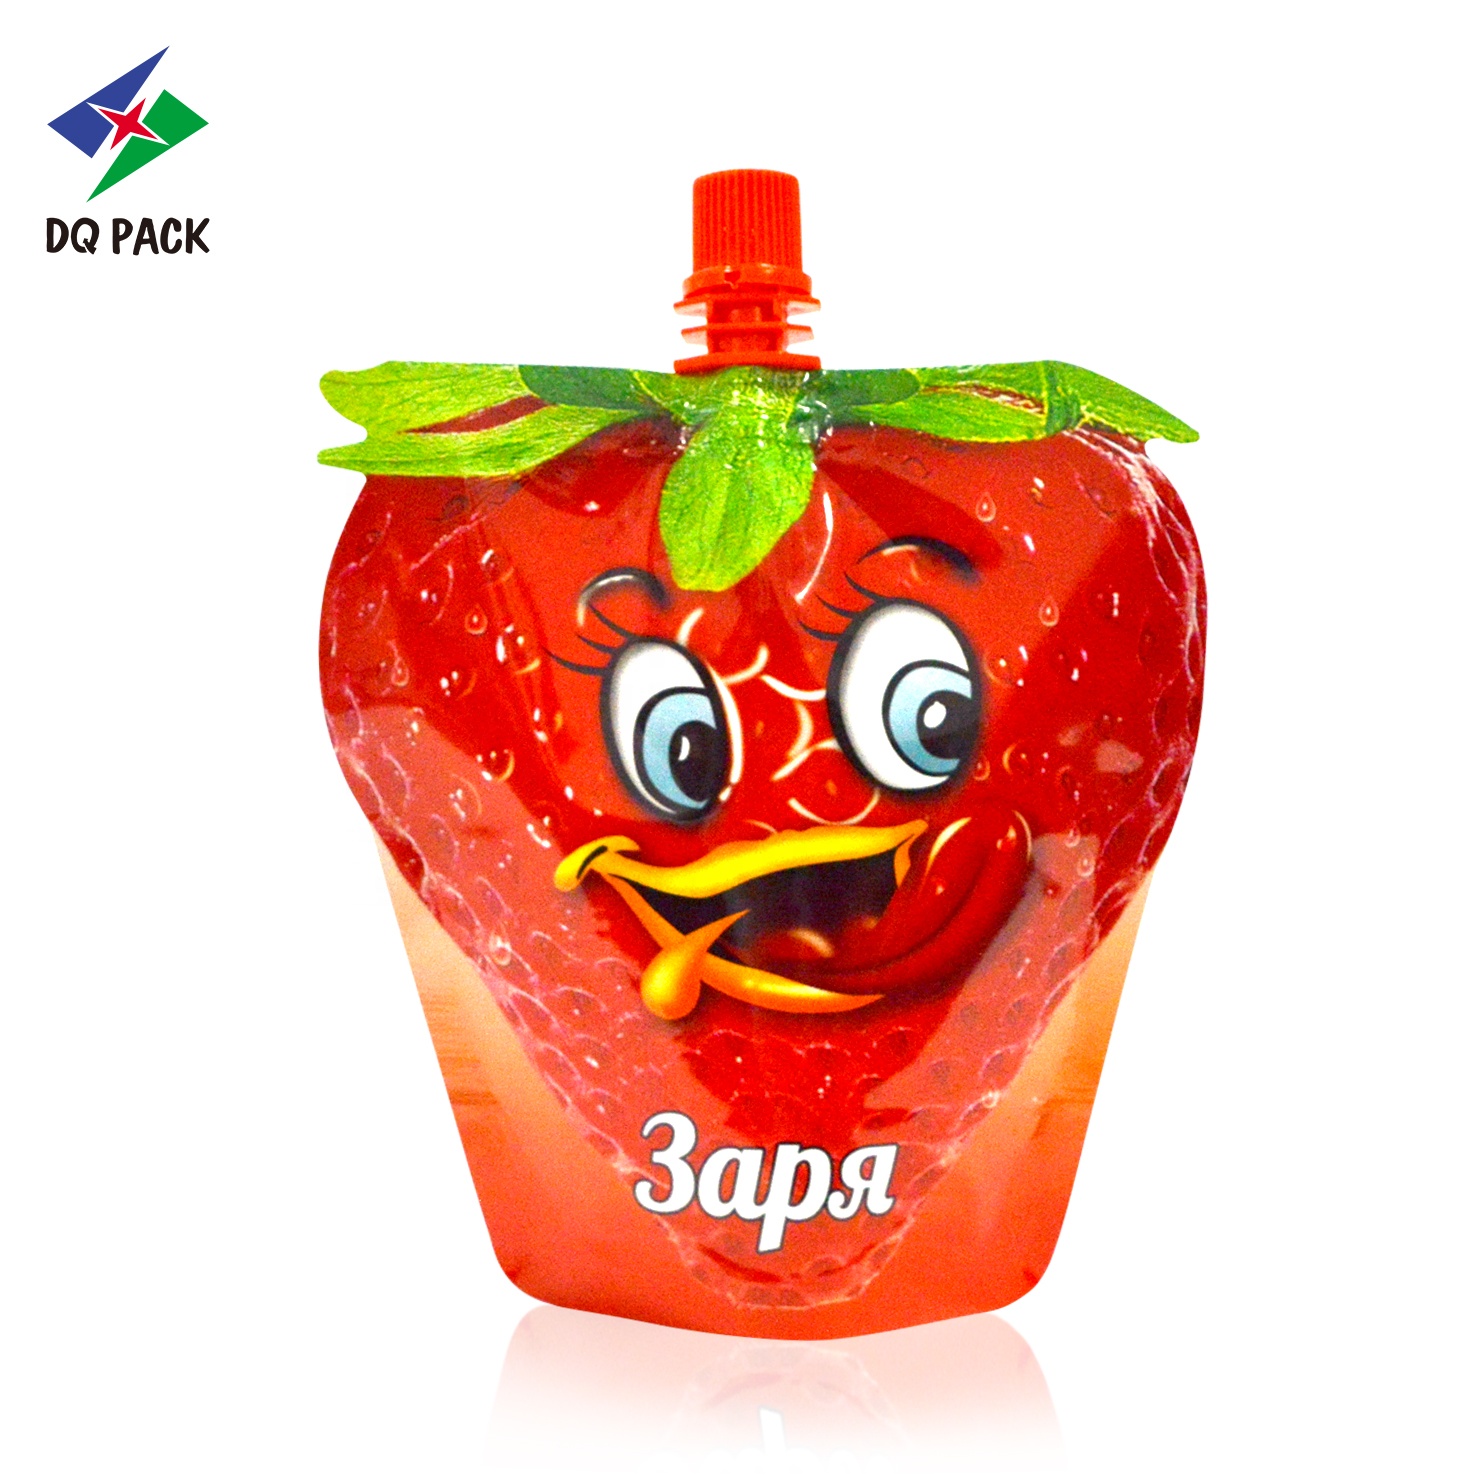 DQ PACK Hot Sale Fruit Shape Strawberry Juice Spout Pouch